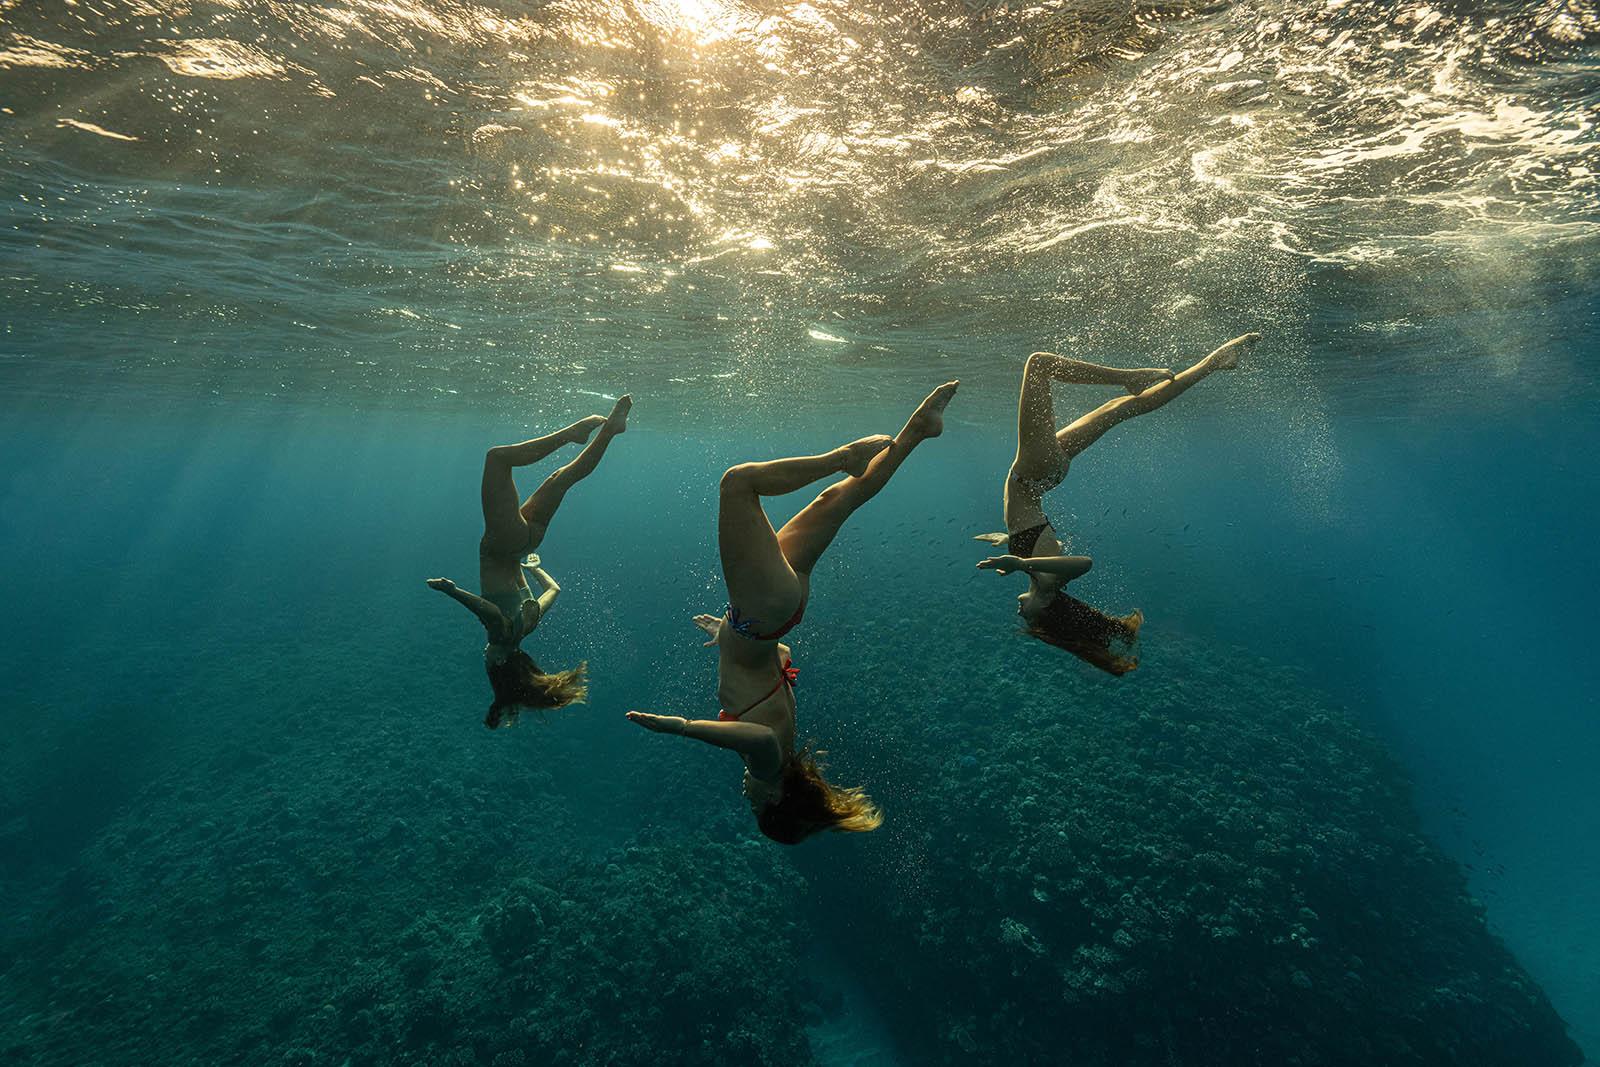 Synchronisiertes Schwimmen im Blau – Kunstdruck, Farb unterwasserfotografie